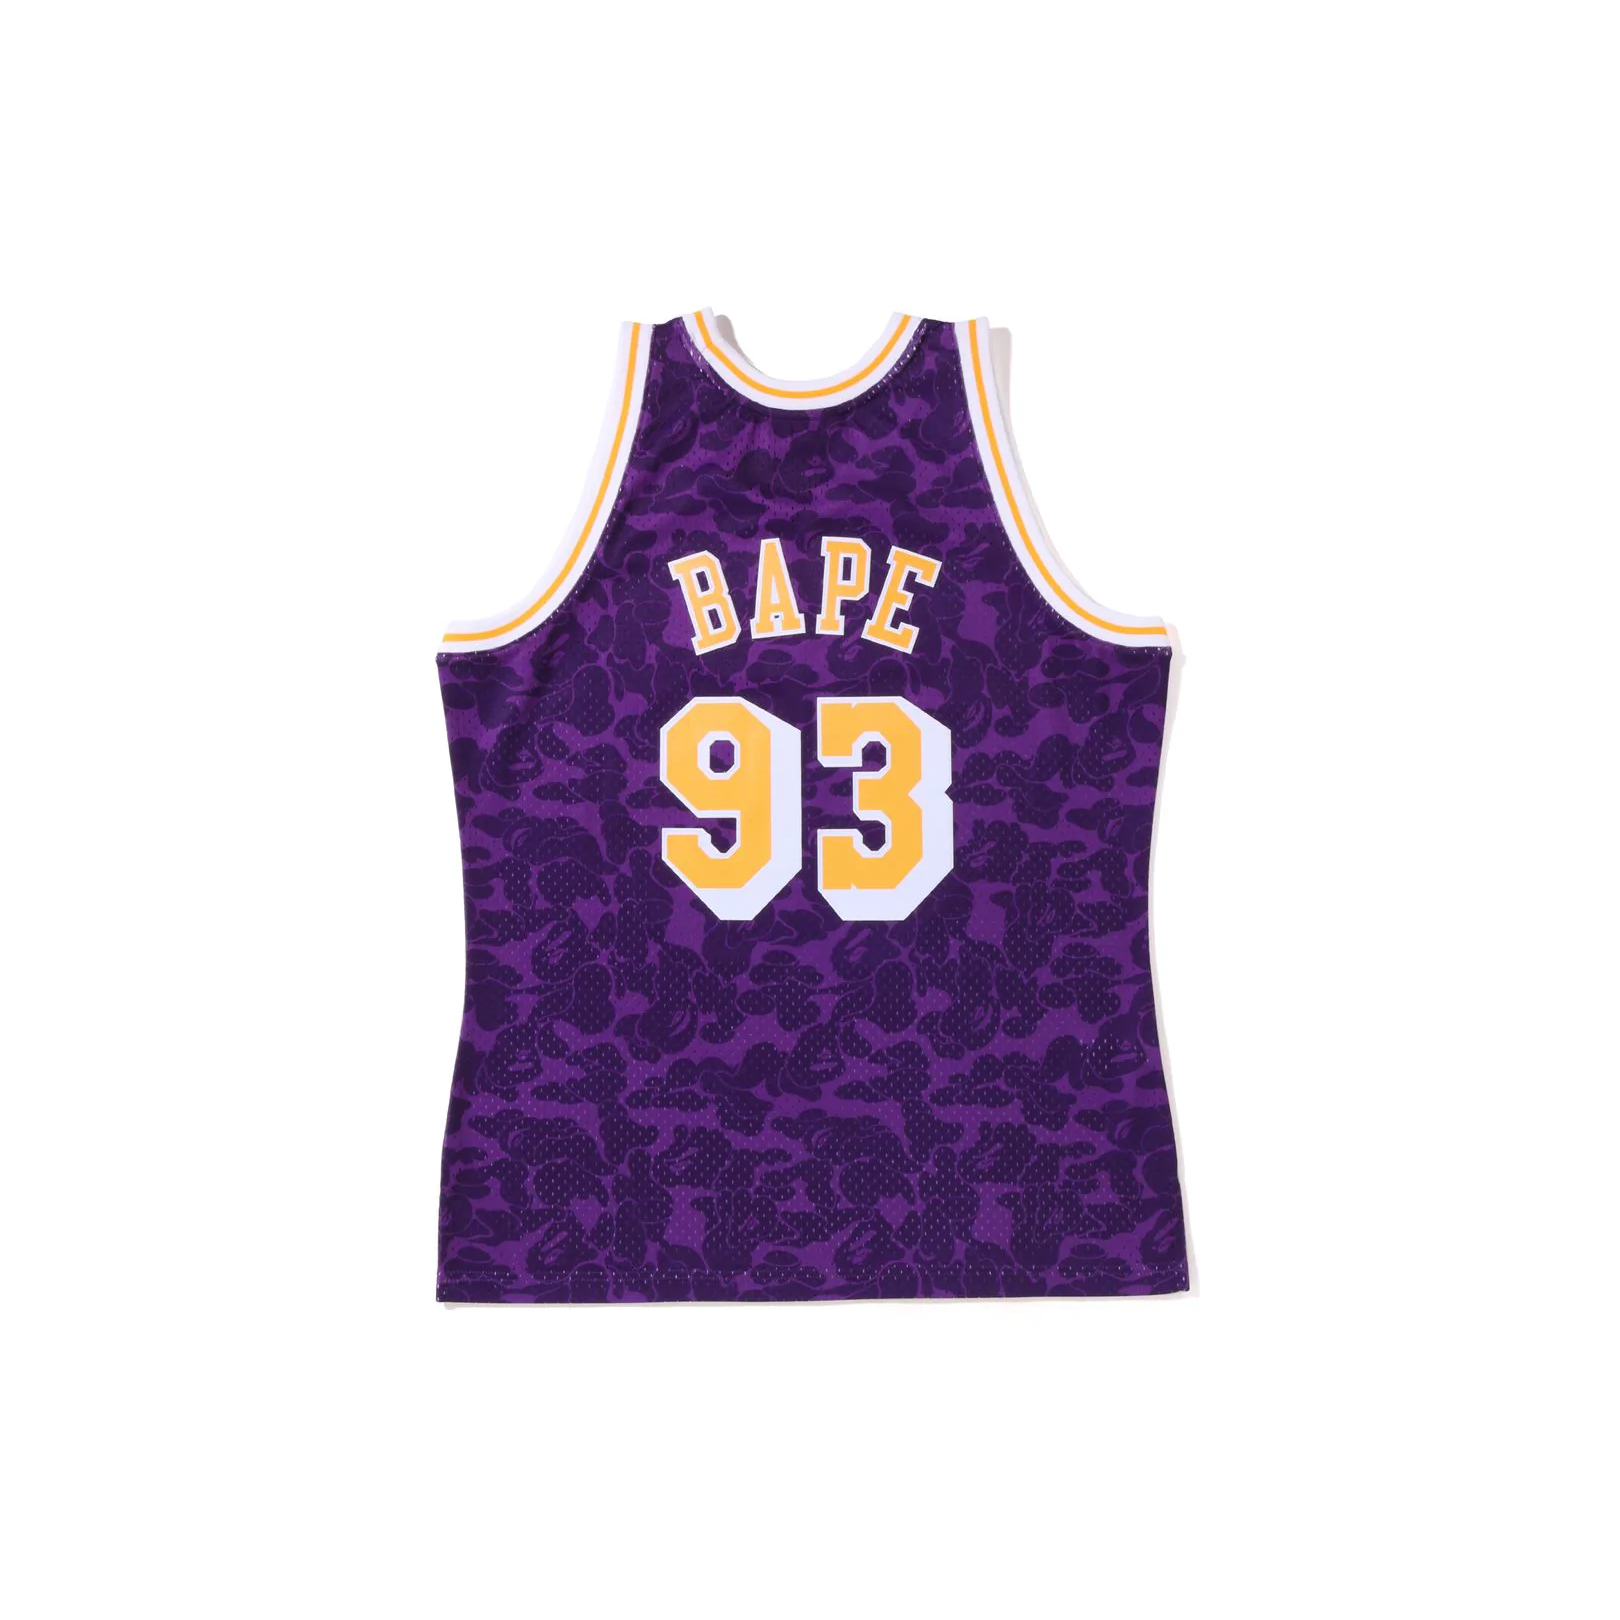 Lakers x Bape